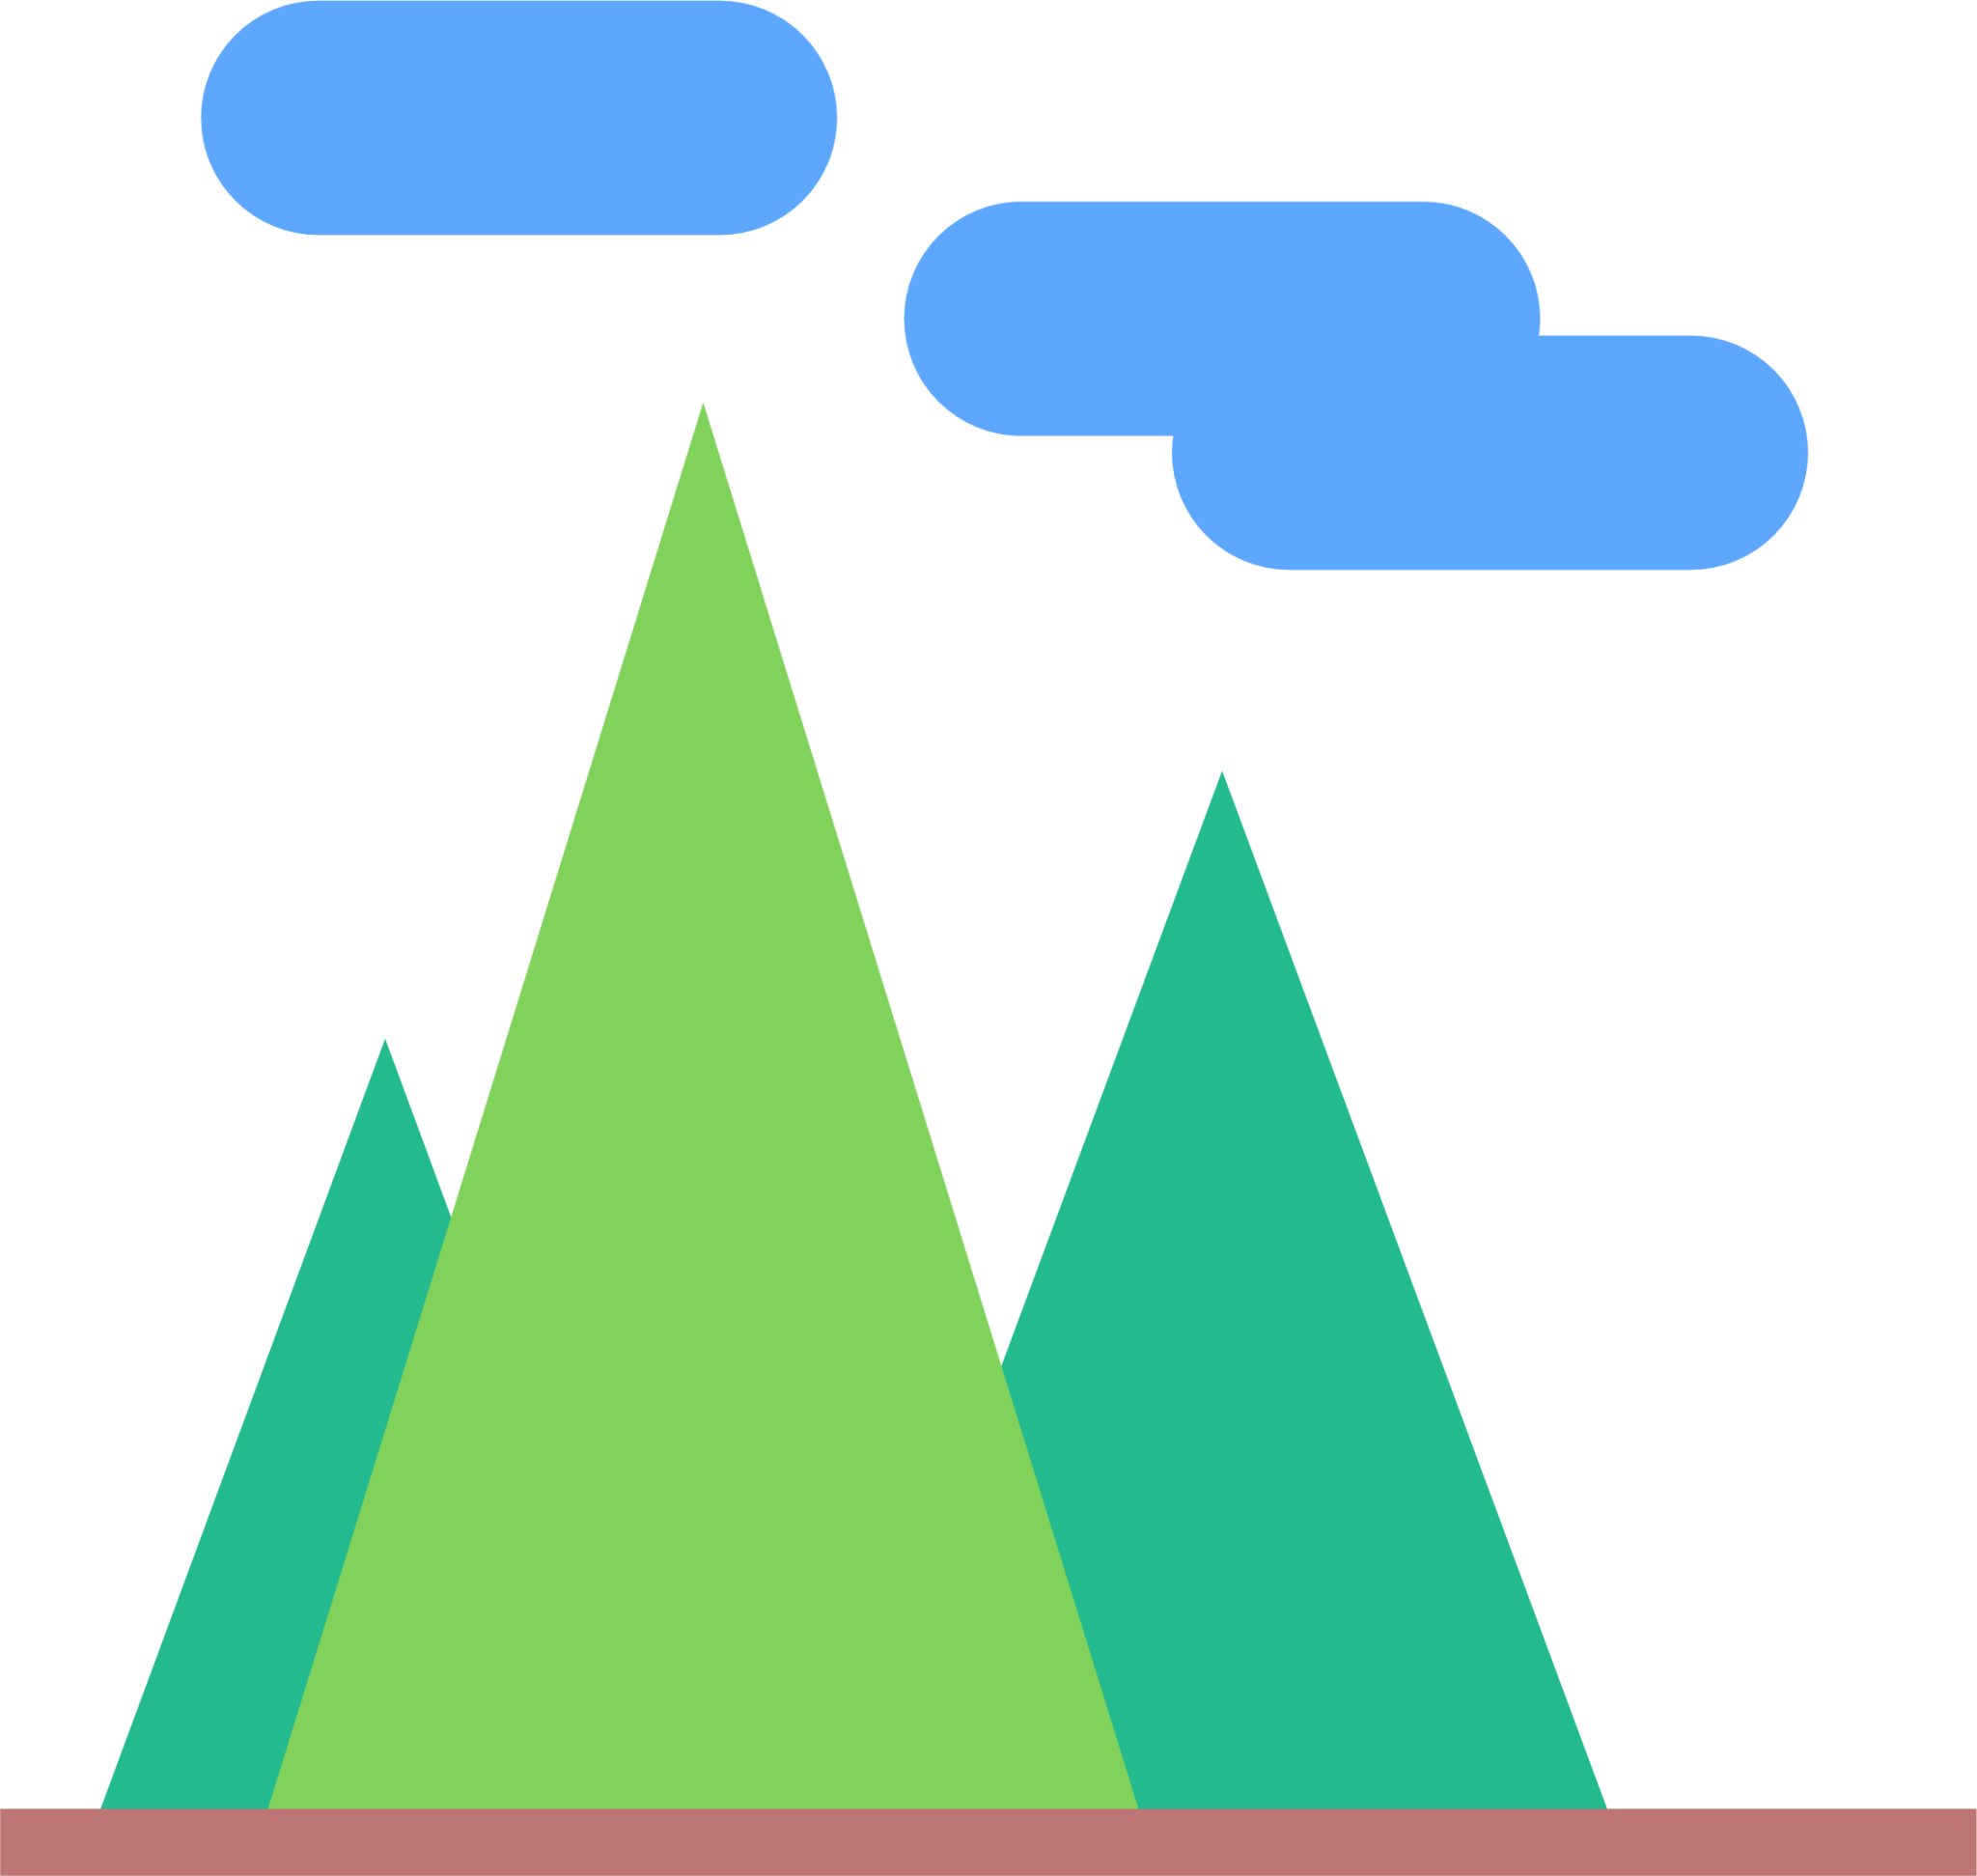 mountains 3 icon